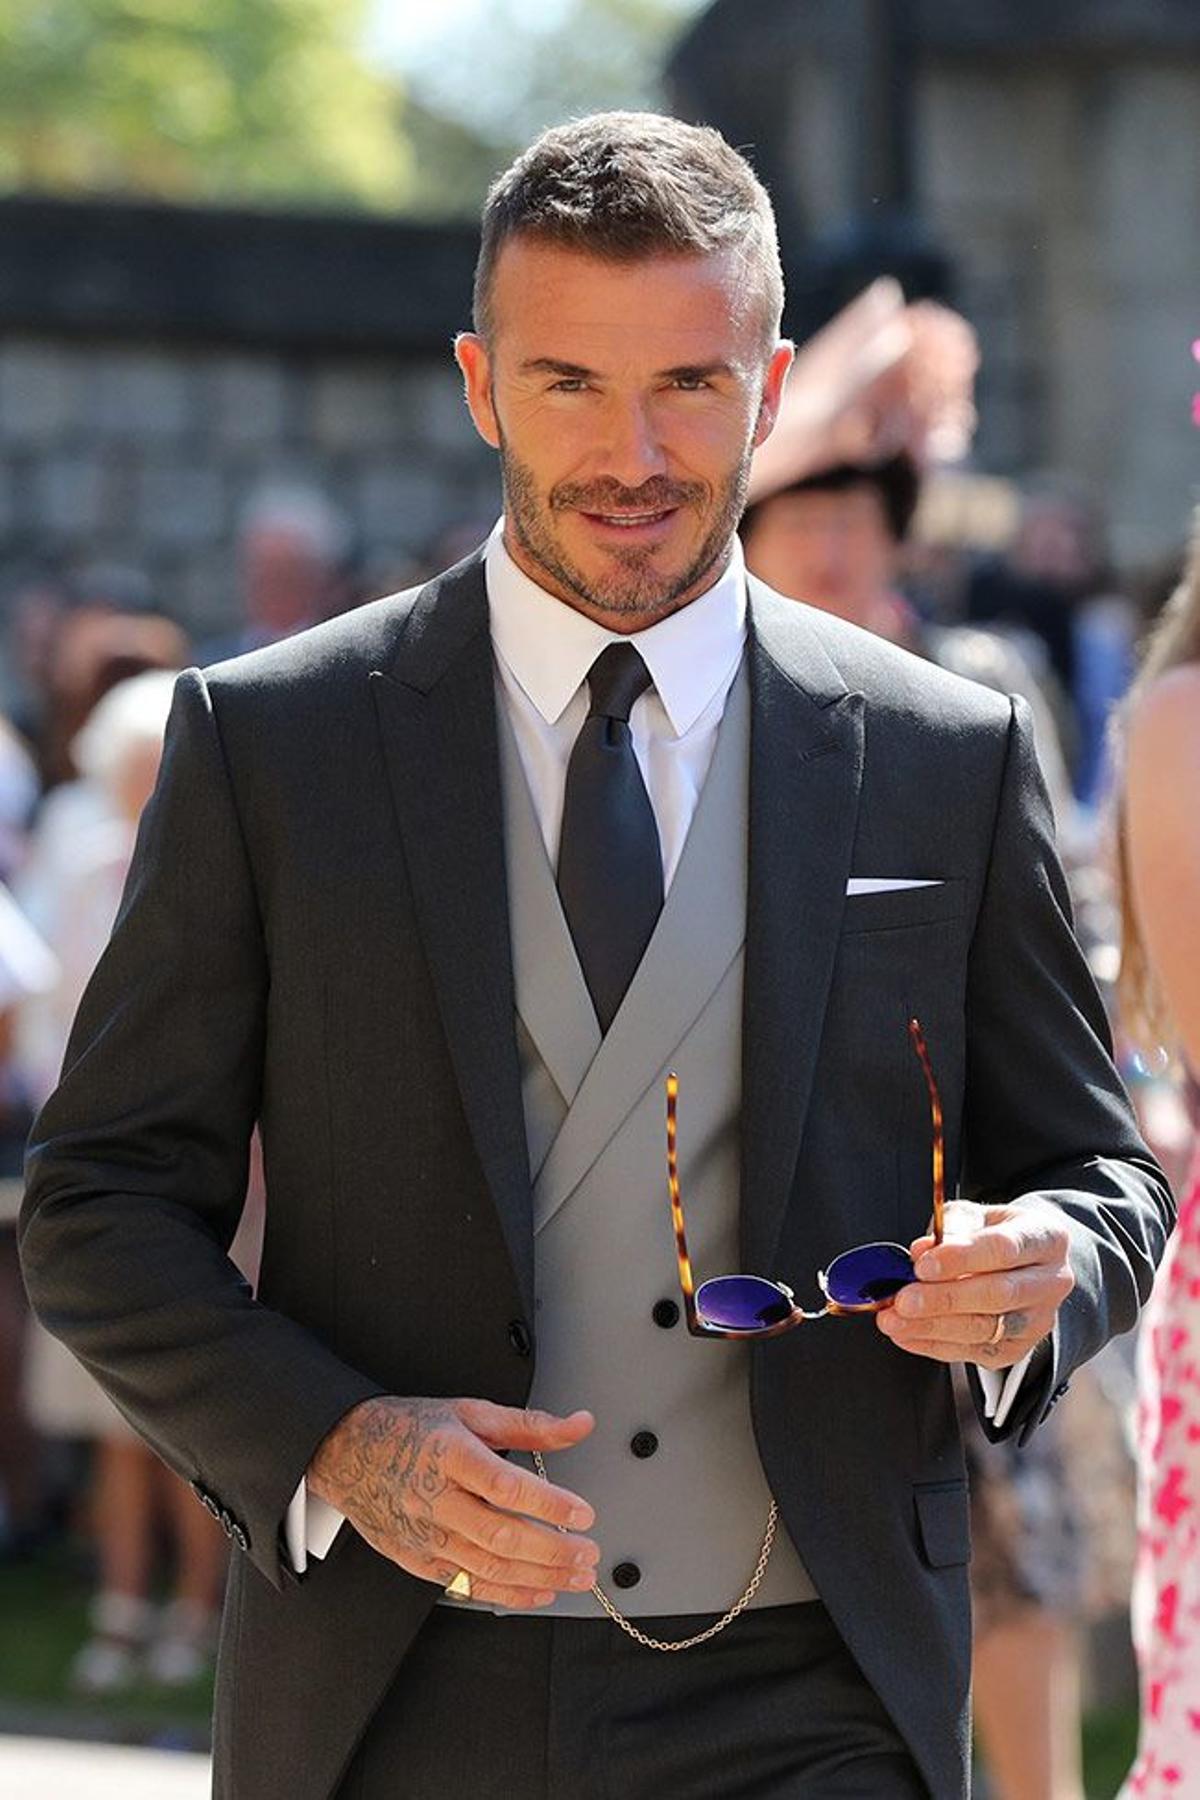 David Beckham, el exfutbolista inglés que no podíamos olvidar en esta lista